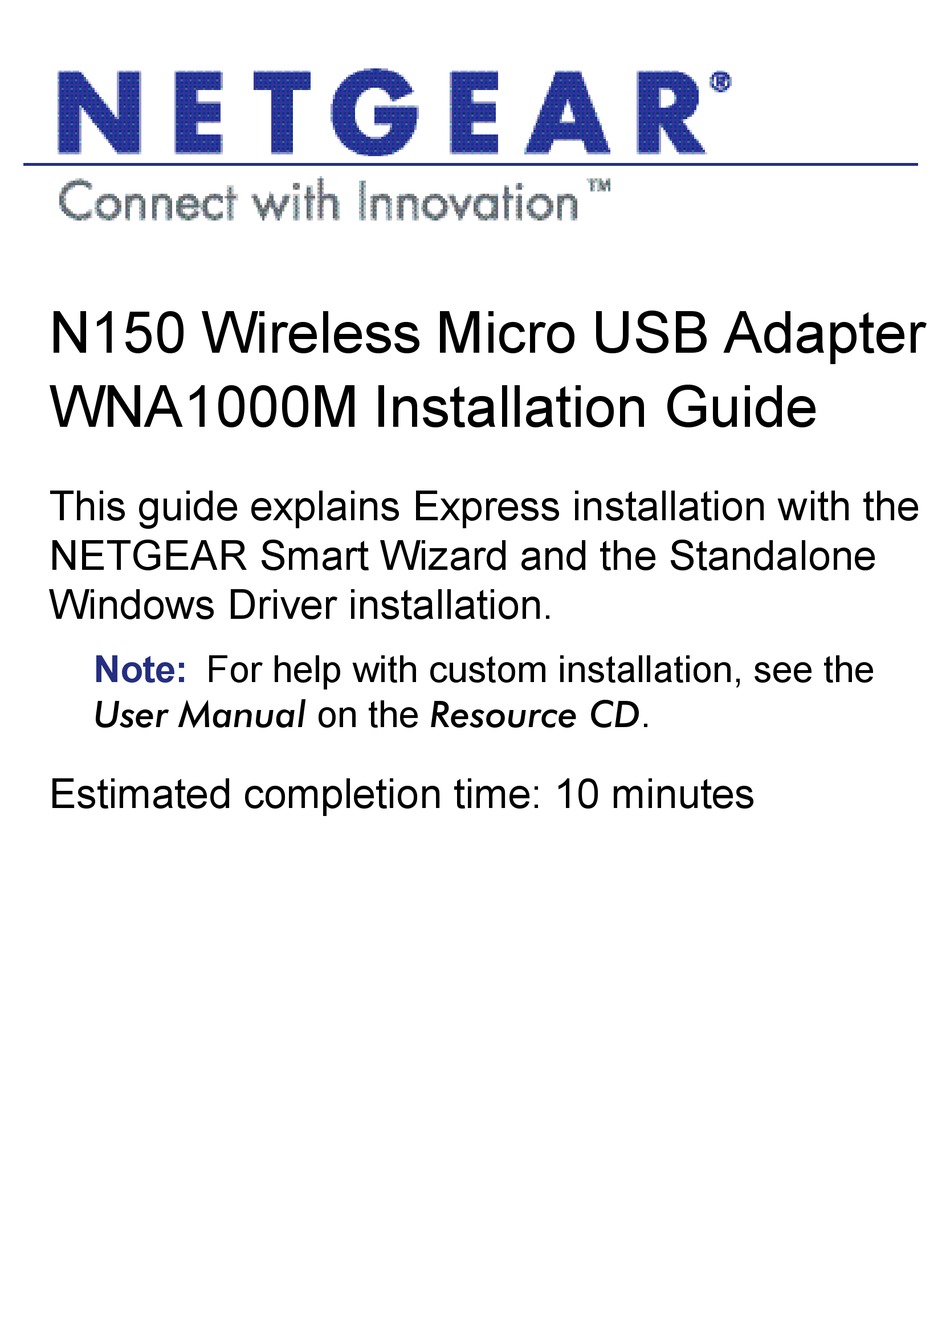 netgear n150 wireless usb adapter wna1000m driver download